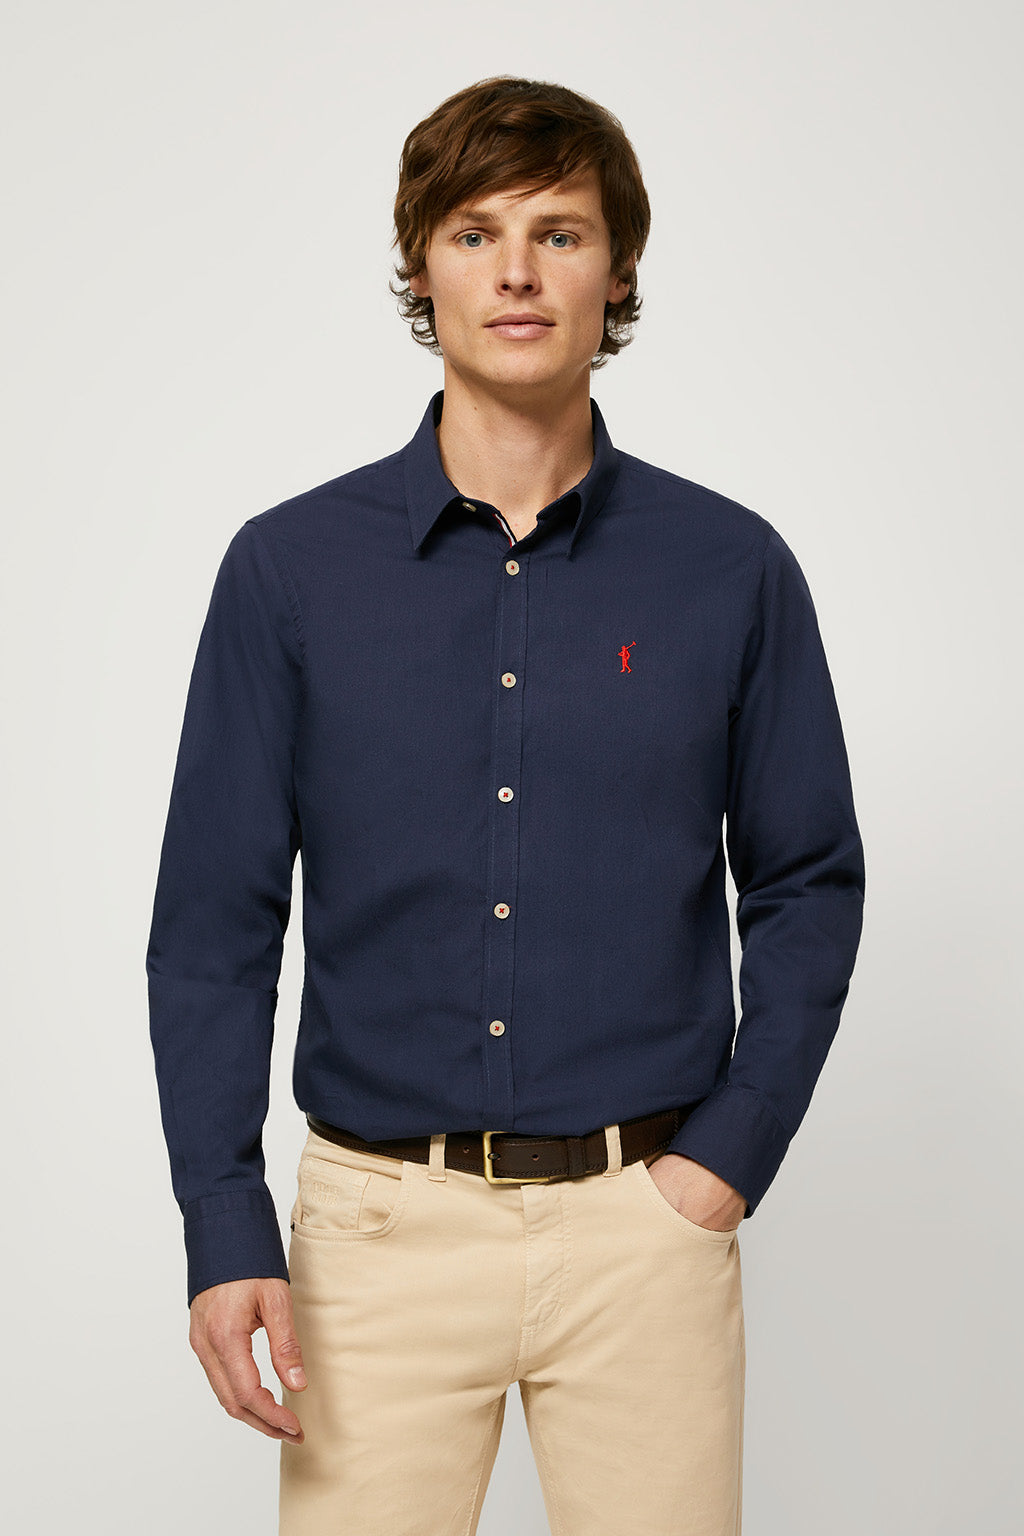 Camisa slim fit marino con logo – Polo Club